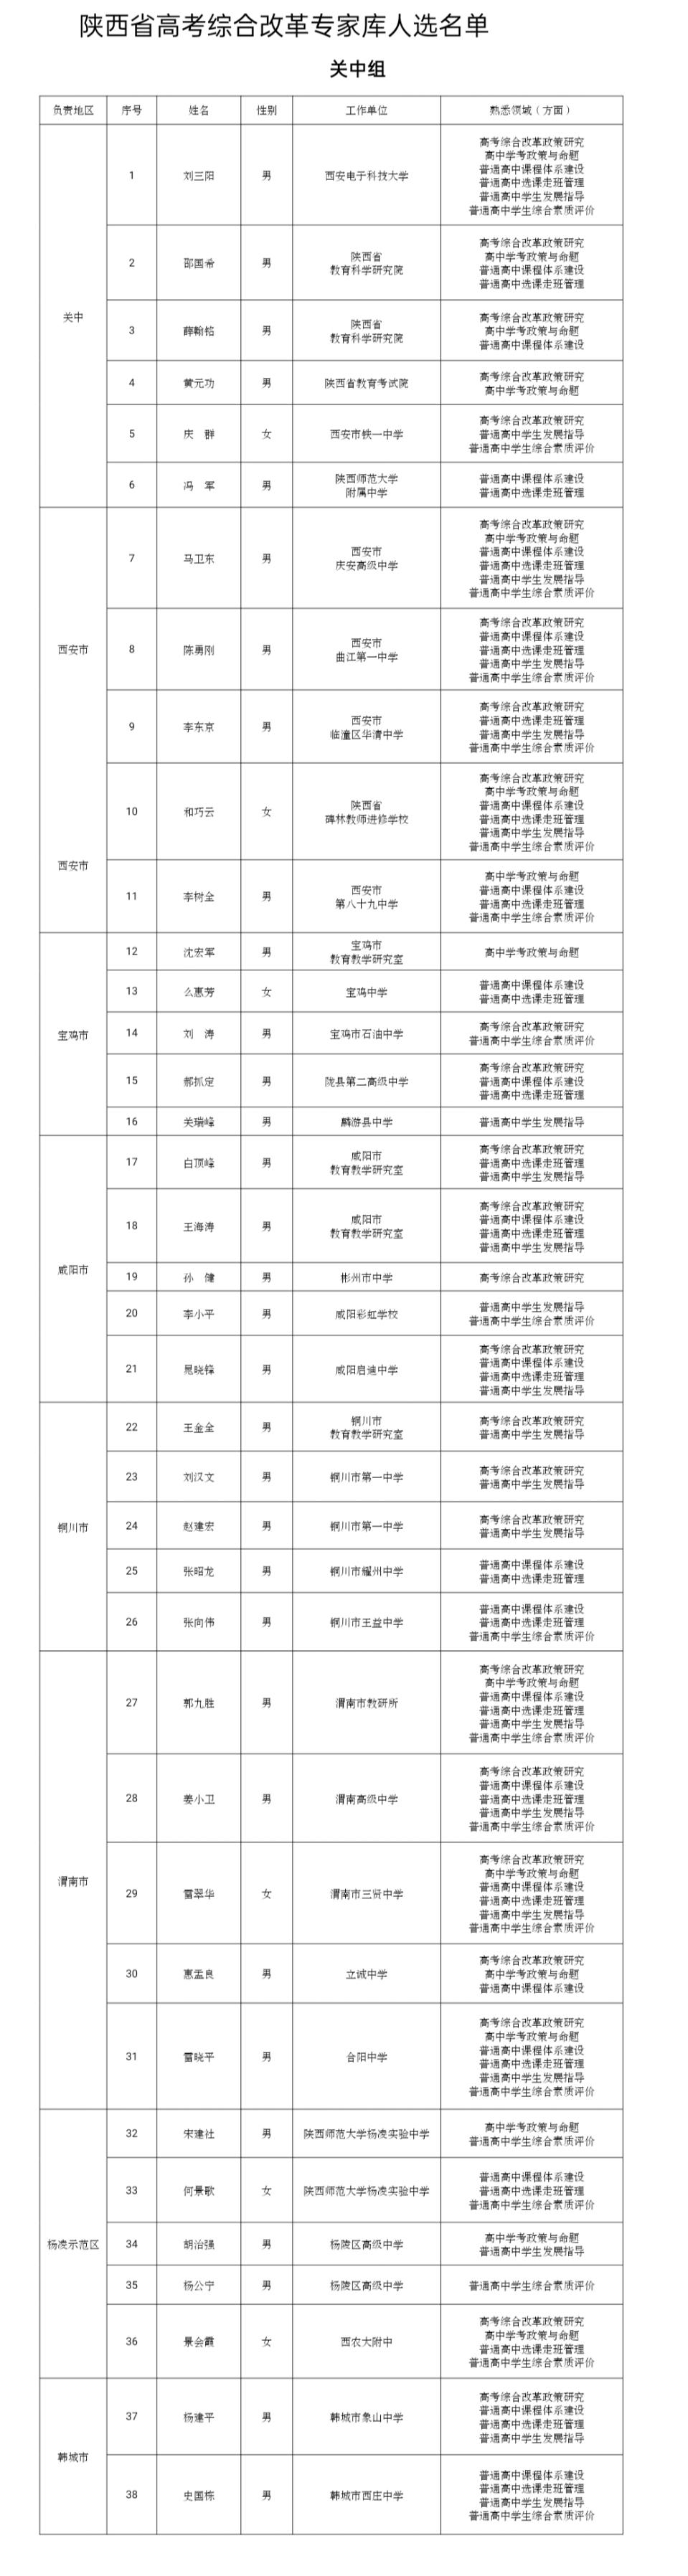 陕西省高考综合改革专家库人选名单公布